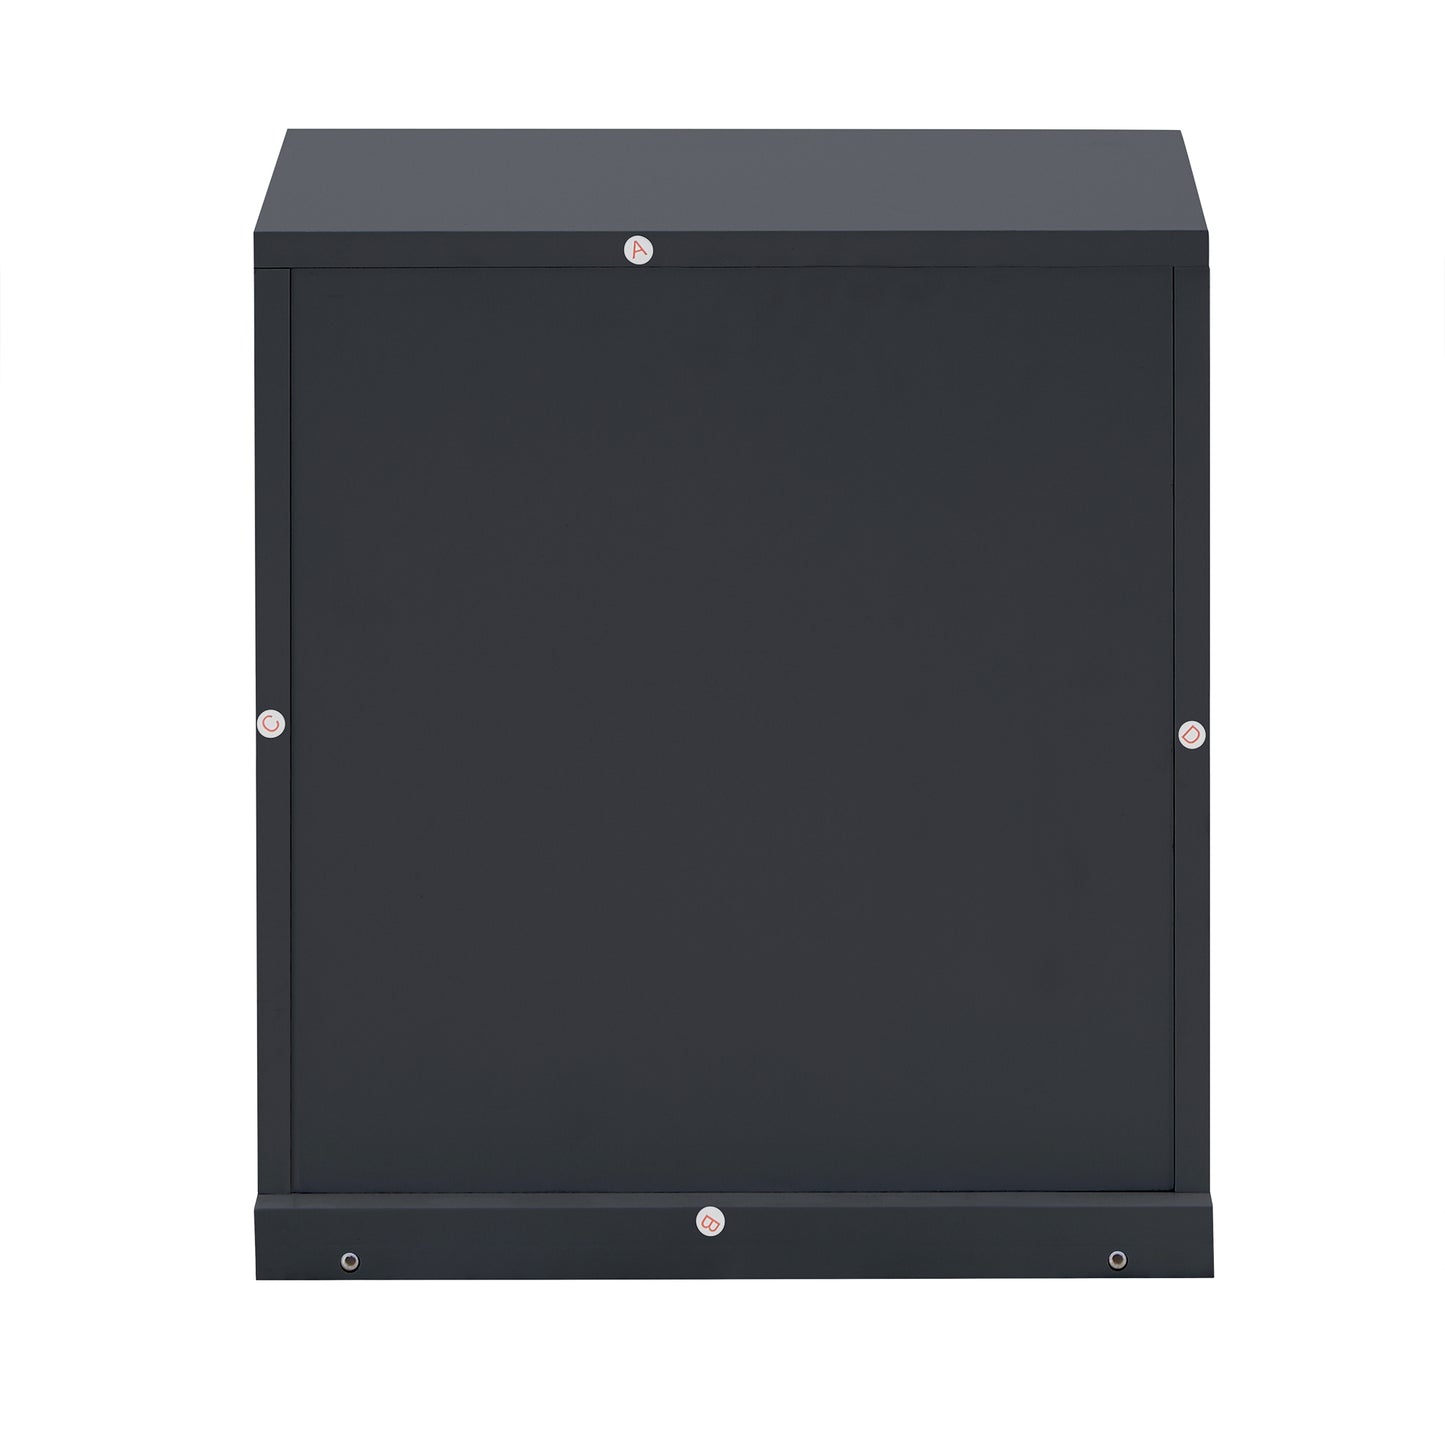 Modular Stacking Storage Bins - Charcoal Black, 1 Box with Drawer